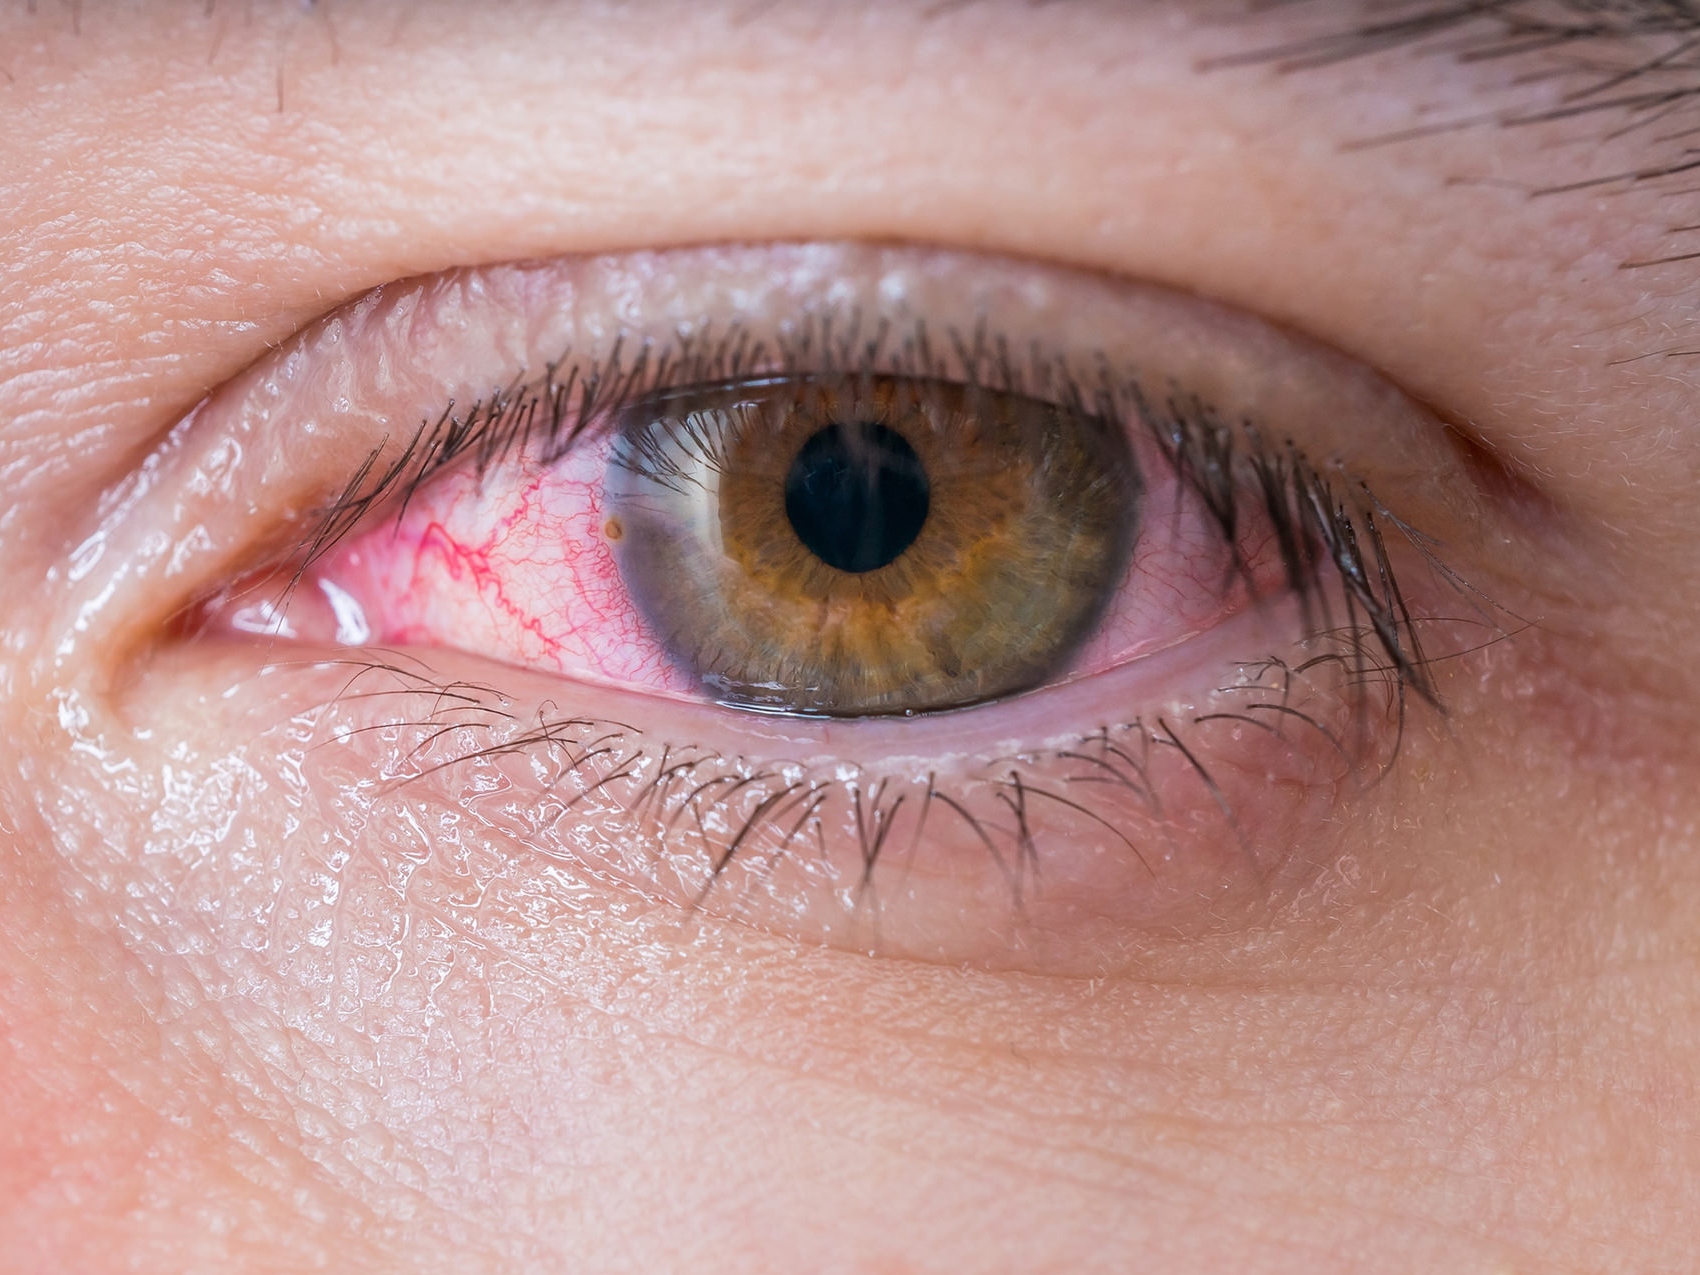 Imaginea prezintă un prim-plan al unui ochi nesănătos, ilustrând apariția unor potențiale pericole pentru ochi. 